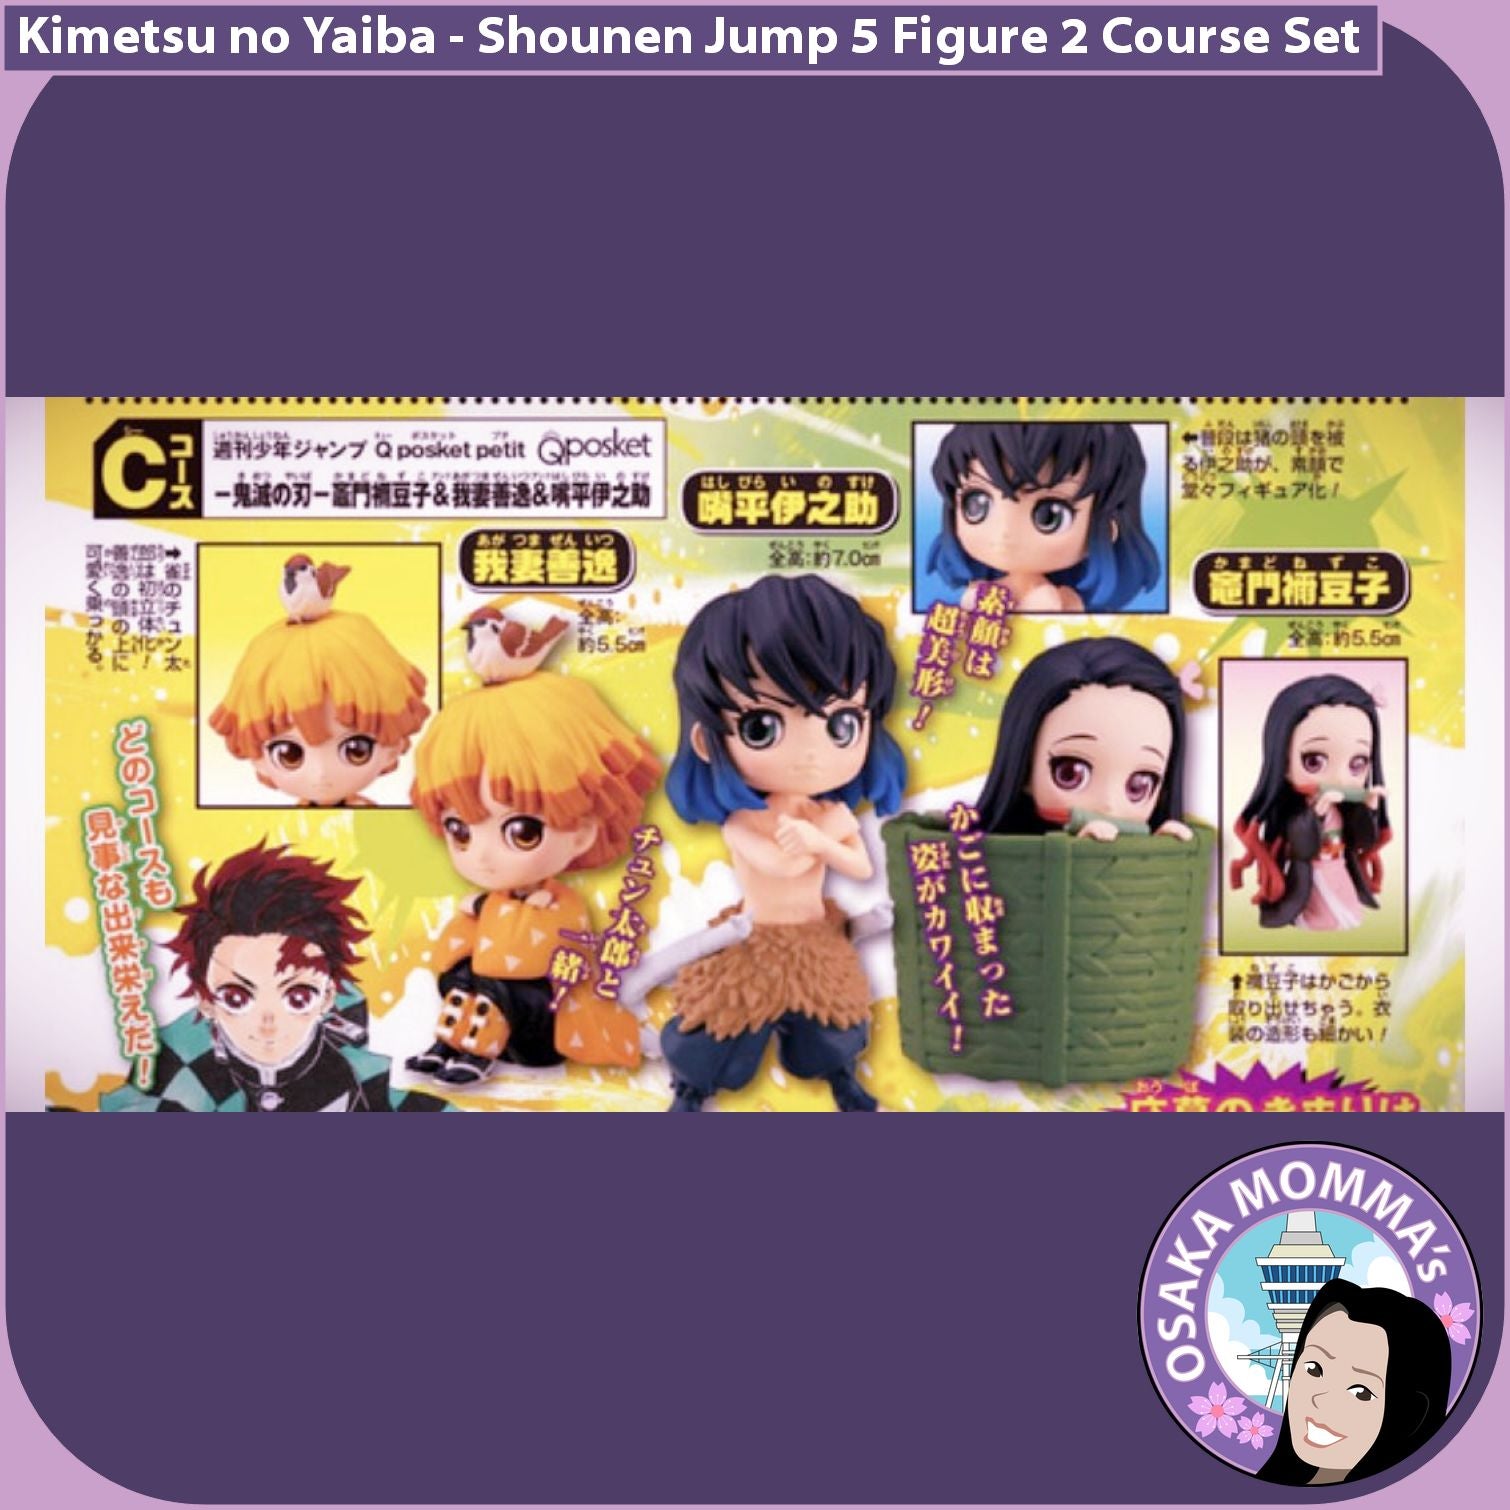 Kimetsu no Yaiba Weekly Jump Exclusive Qposket Petit 5 Figures 2 